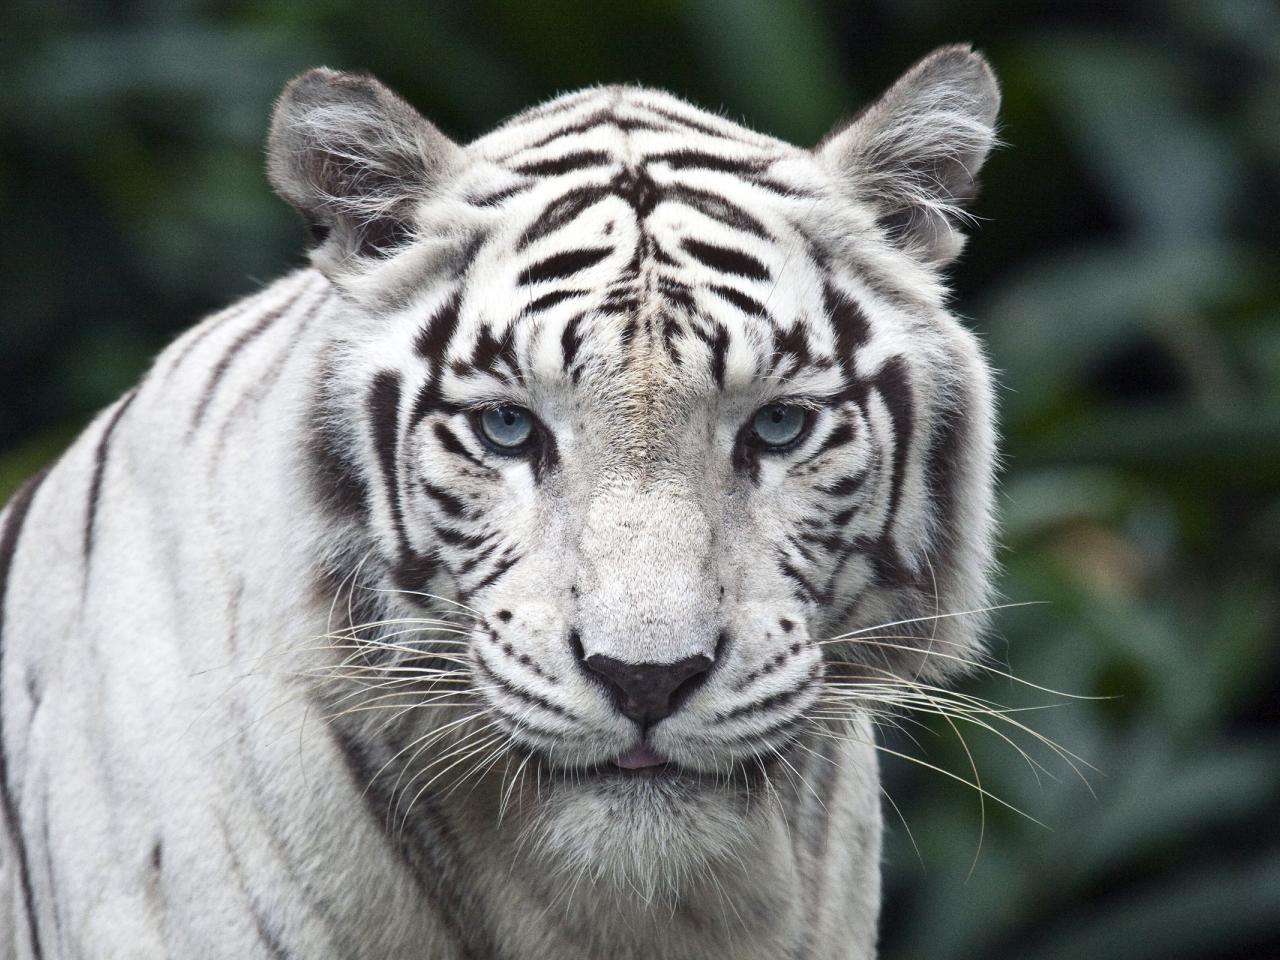 обои Белый тигр фото